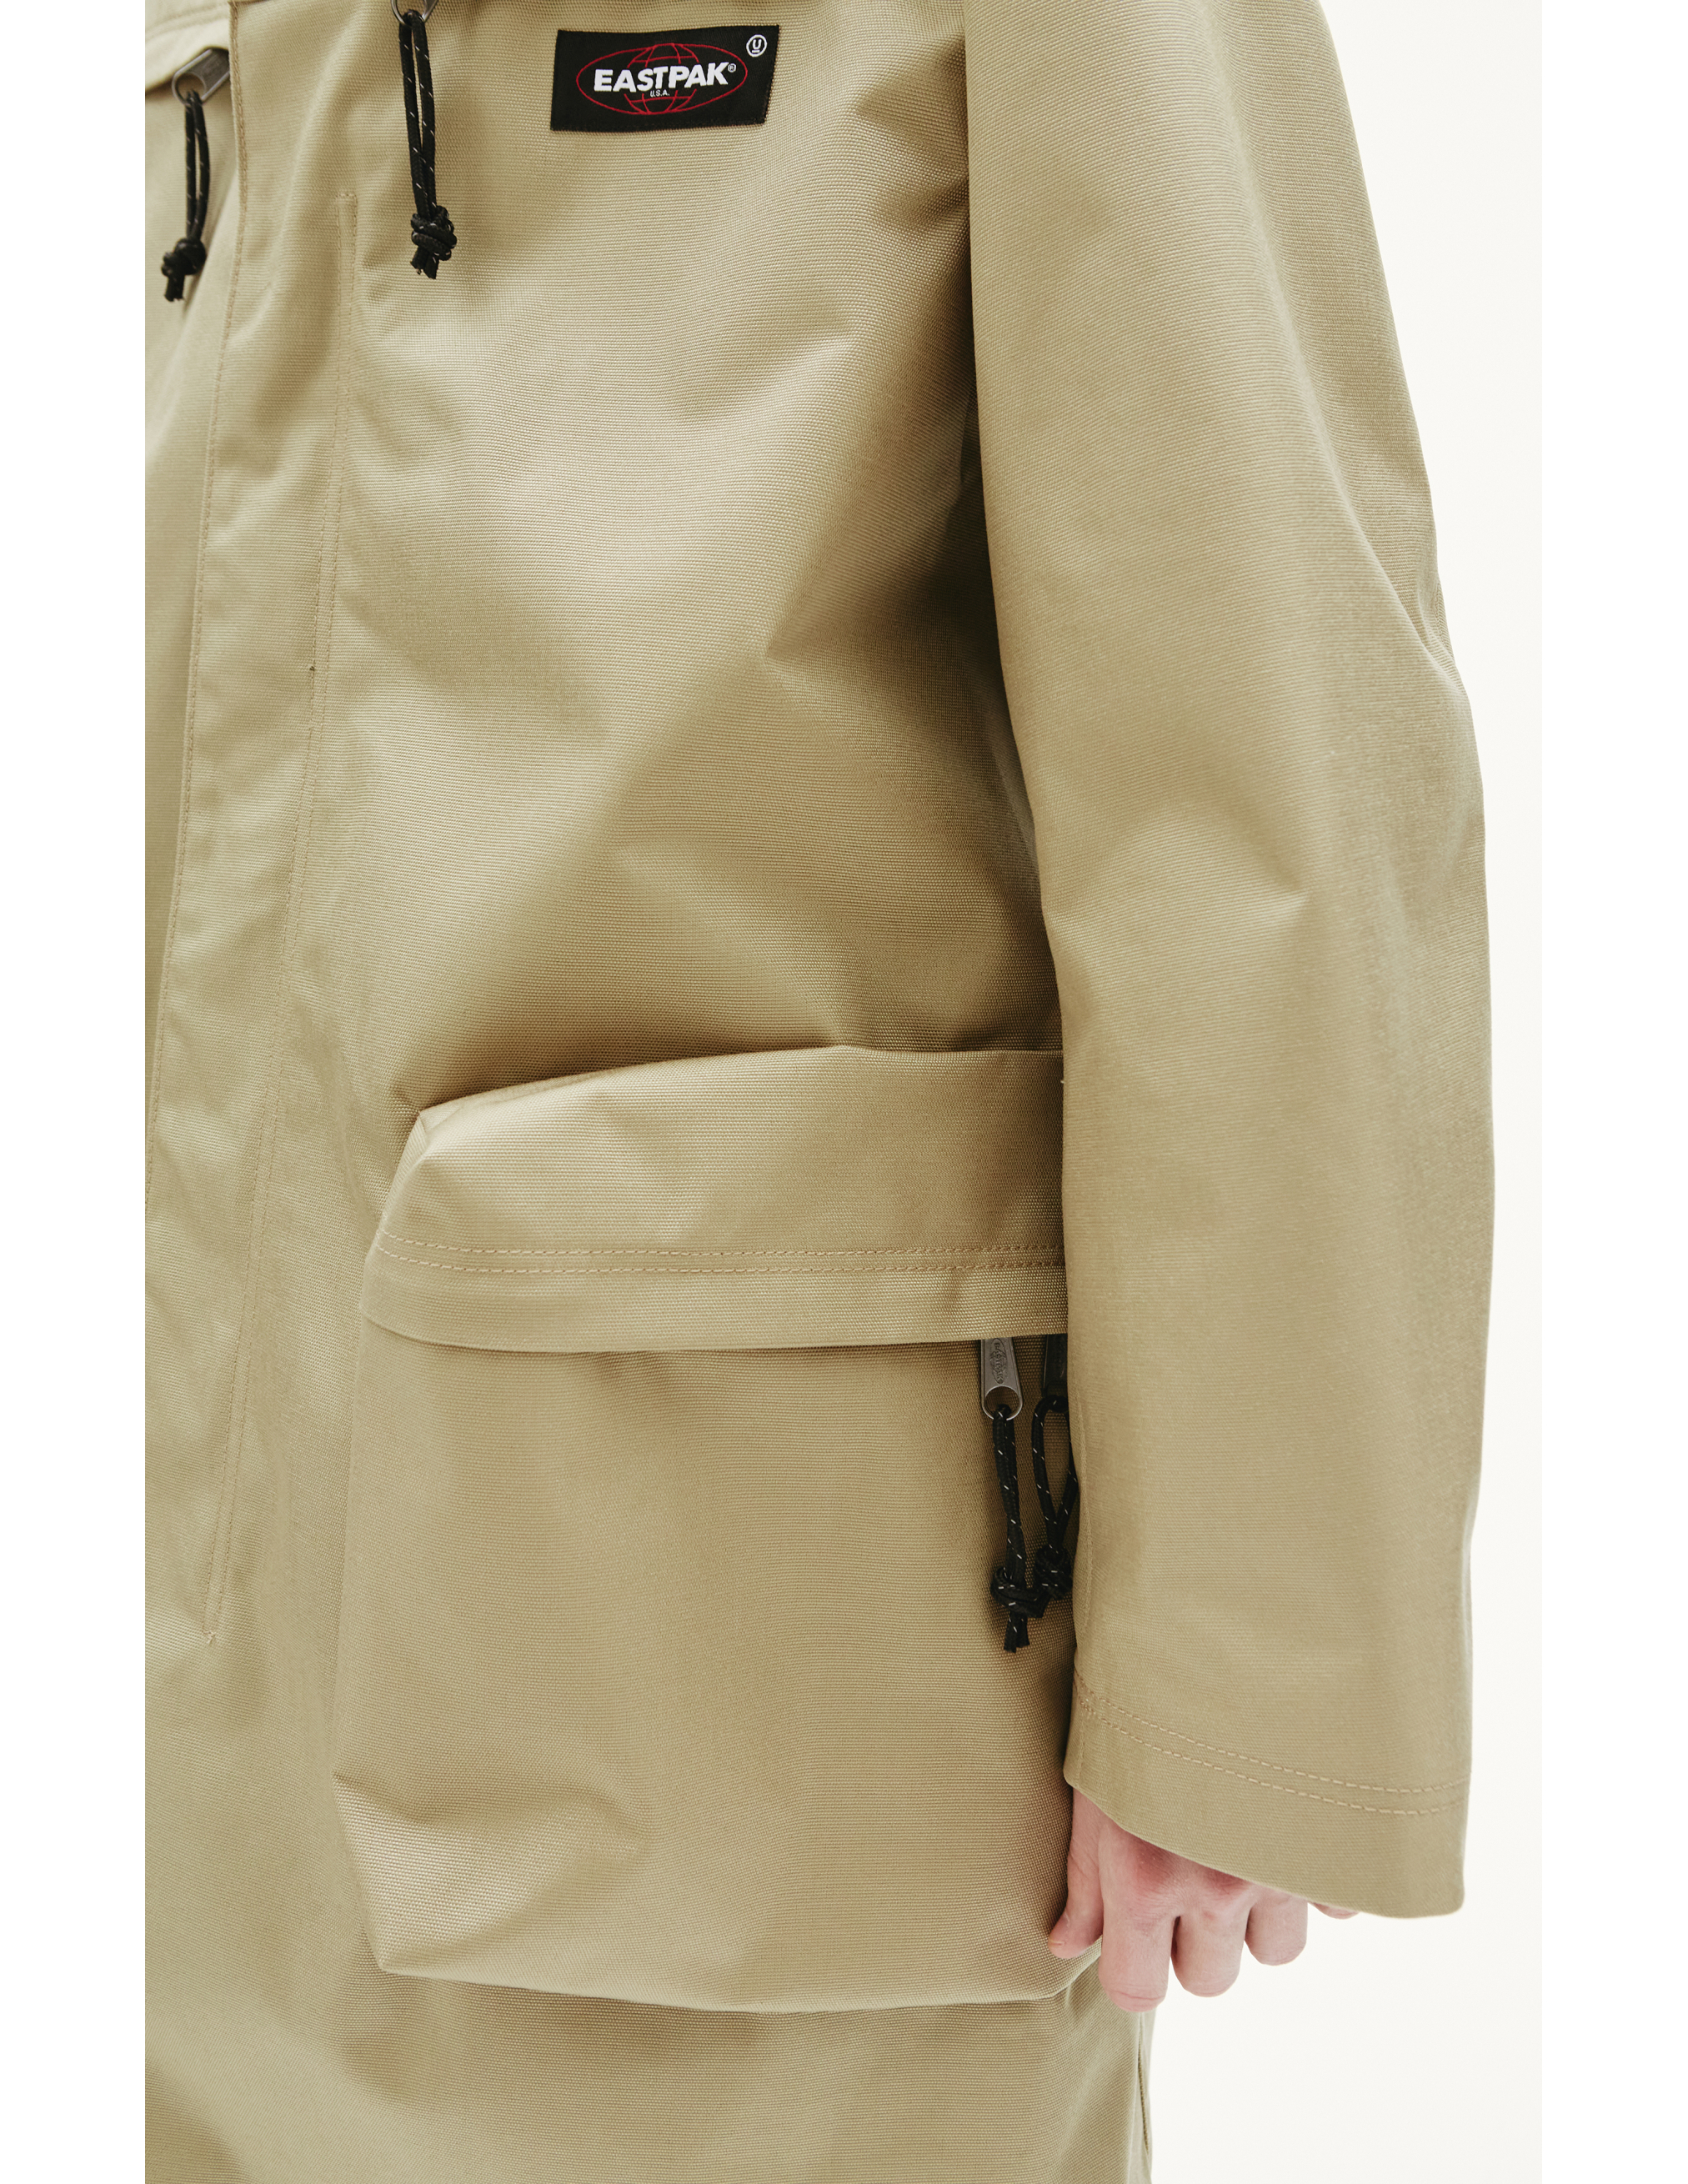 Плащ Undercover x Eastpak с накладными карманами Undercover UC2A4309/beige, размер 5;4 UC2A4309/beige - фото 6